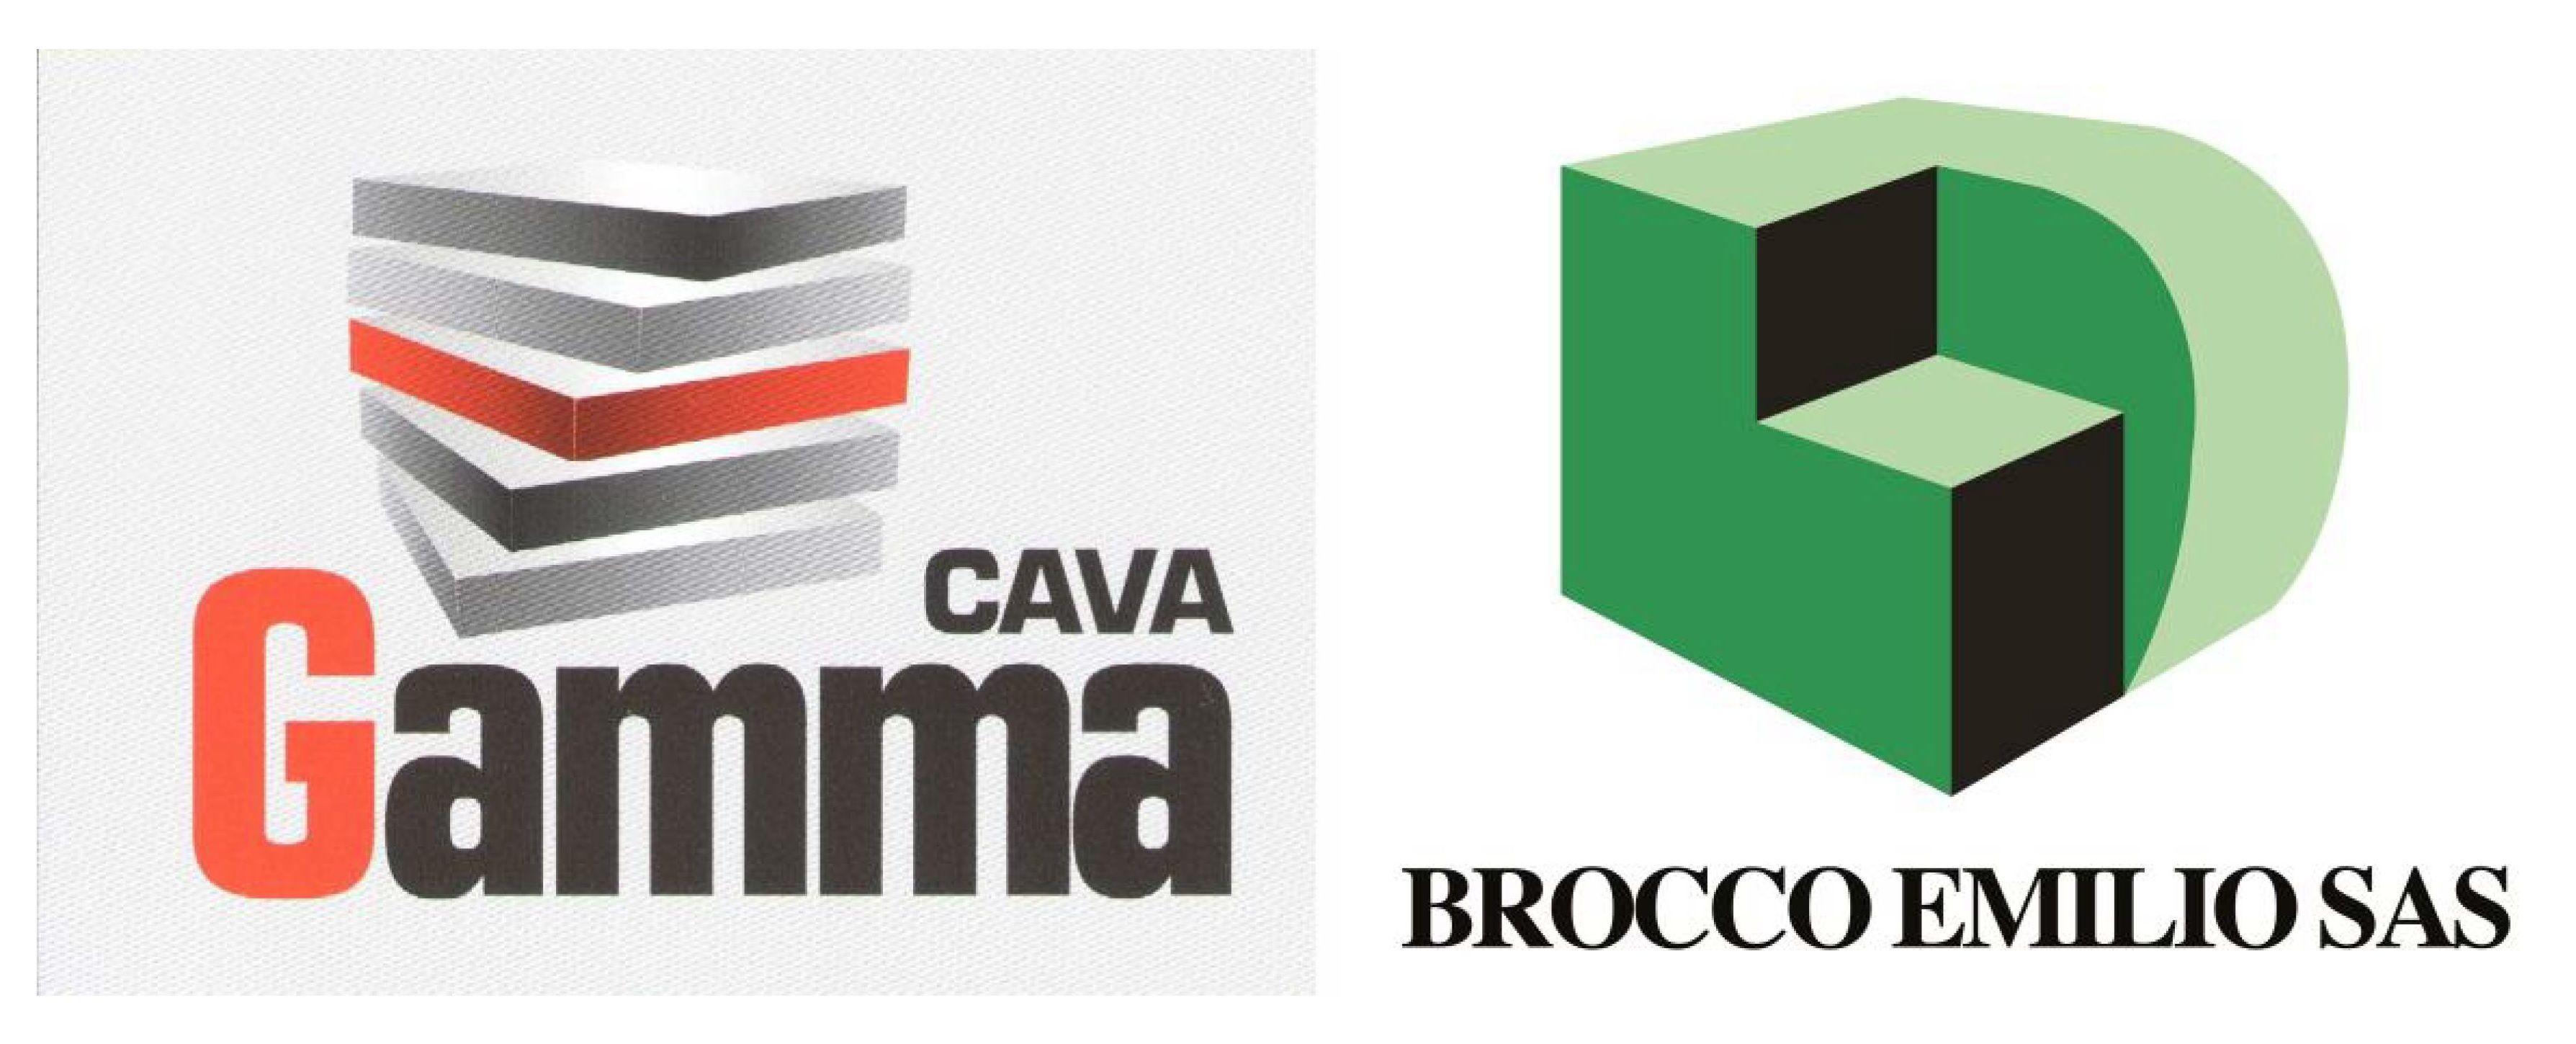 CAVA GAMMA - BROCCO EMILIO EREDI